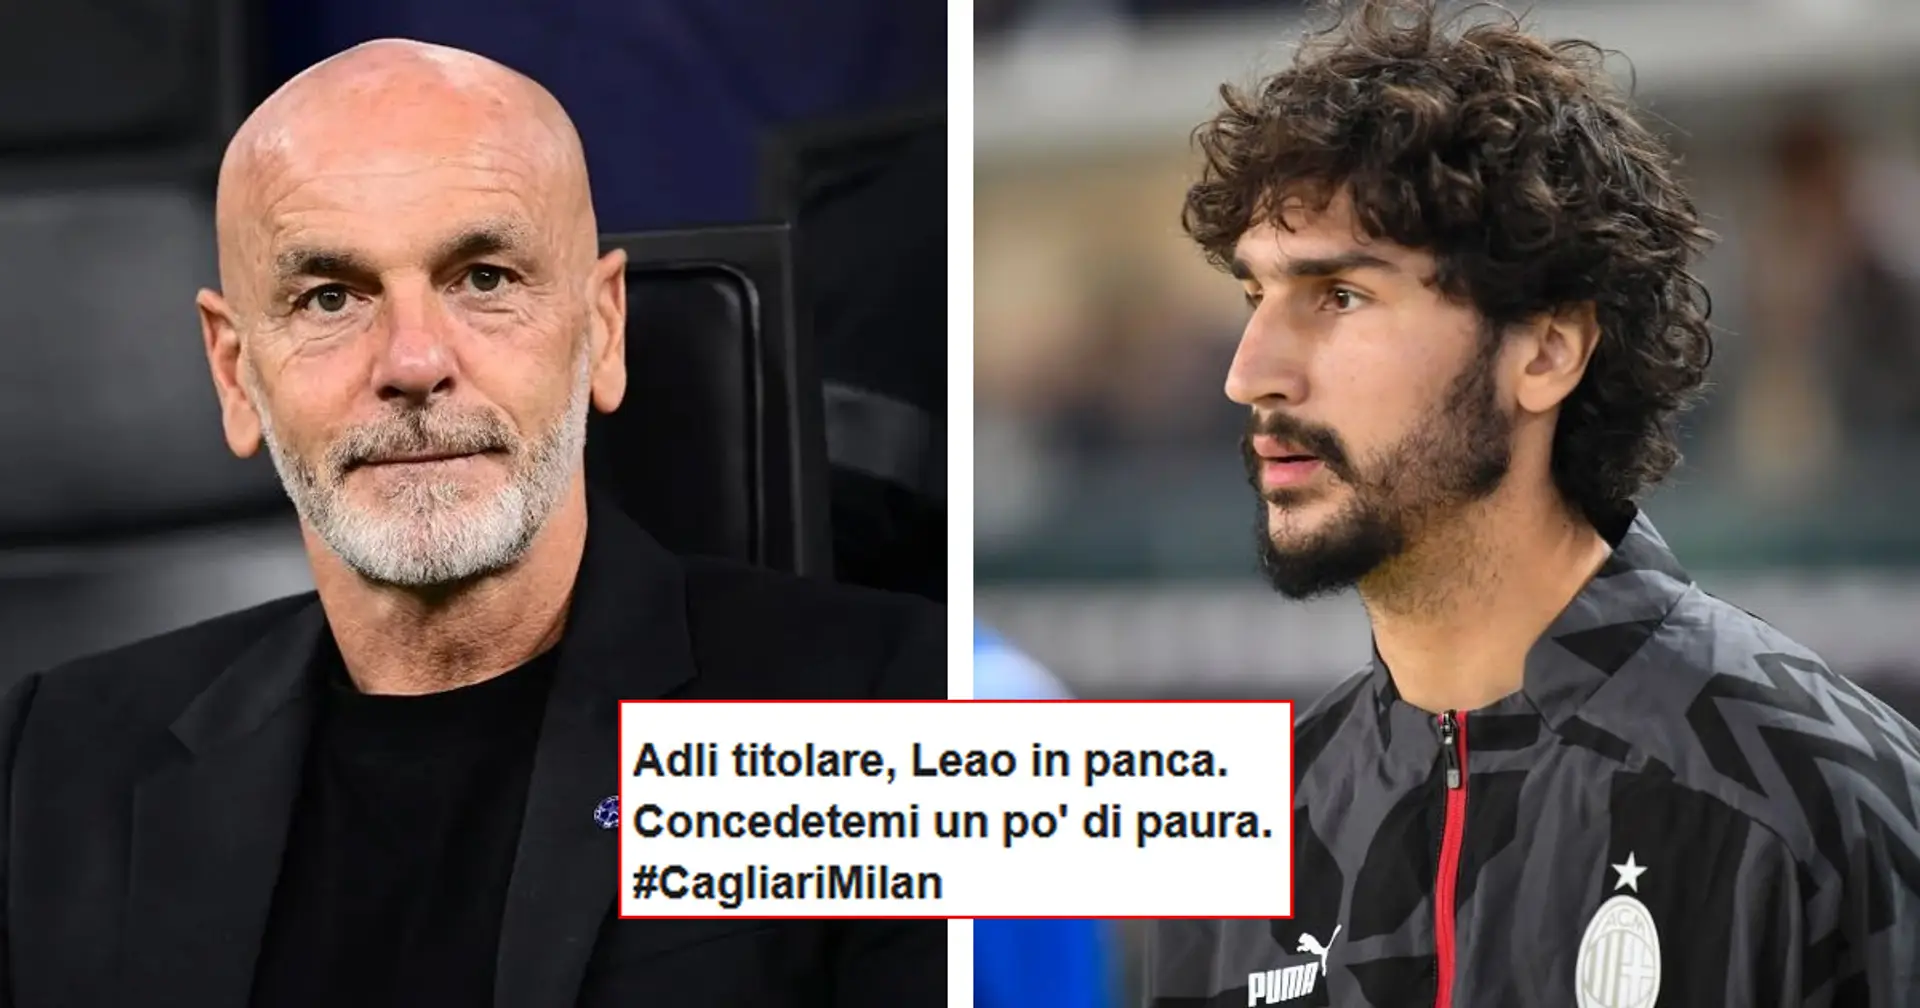 "Curioso, e impaurito!": tante novità contro il Cagliari, i tifosi caricano il Milan ed il debuttante Adli